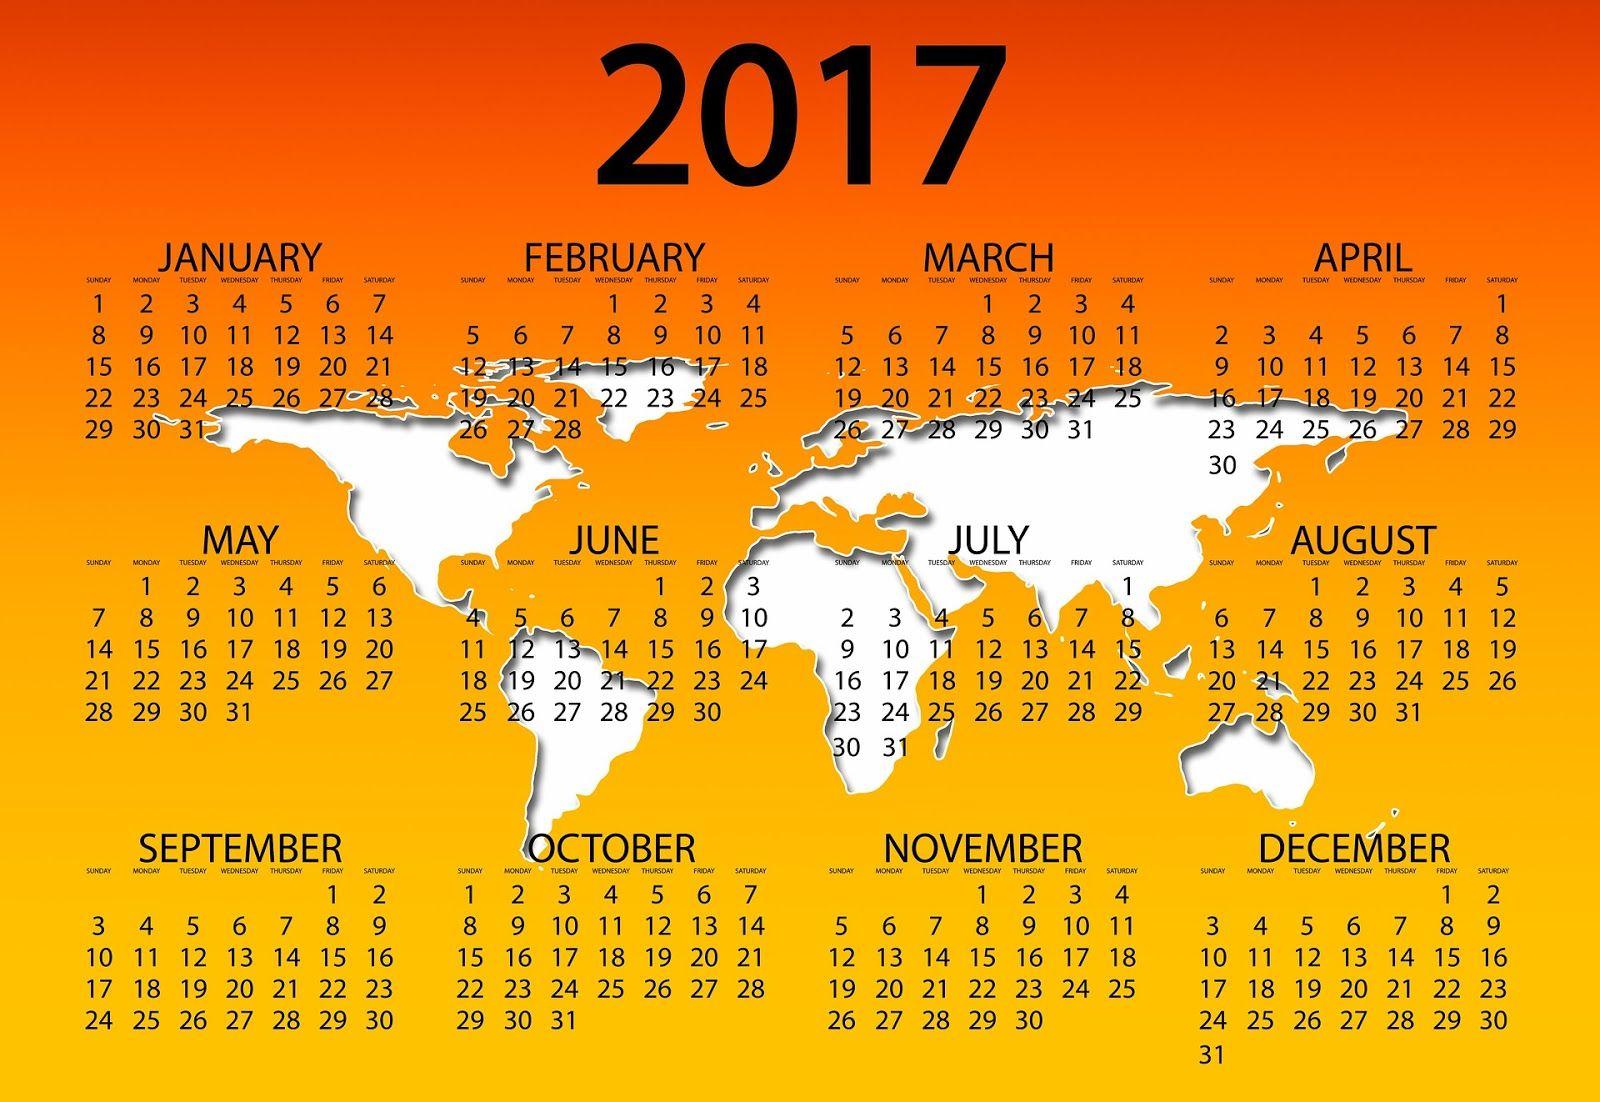 Calendar 2017 Wallpaper High Quality